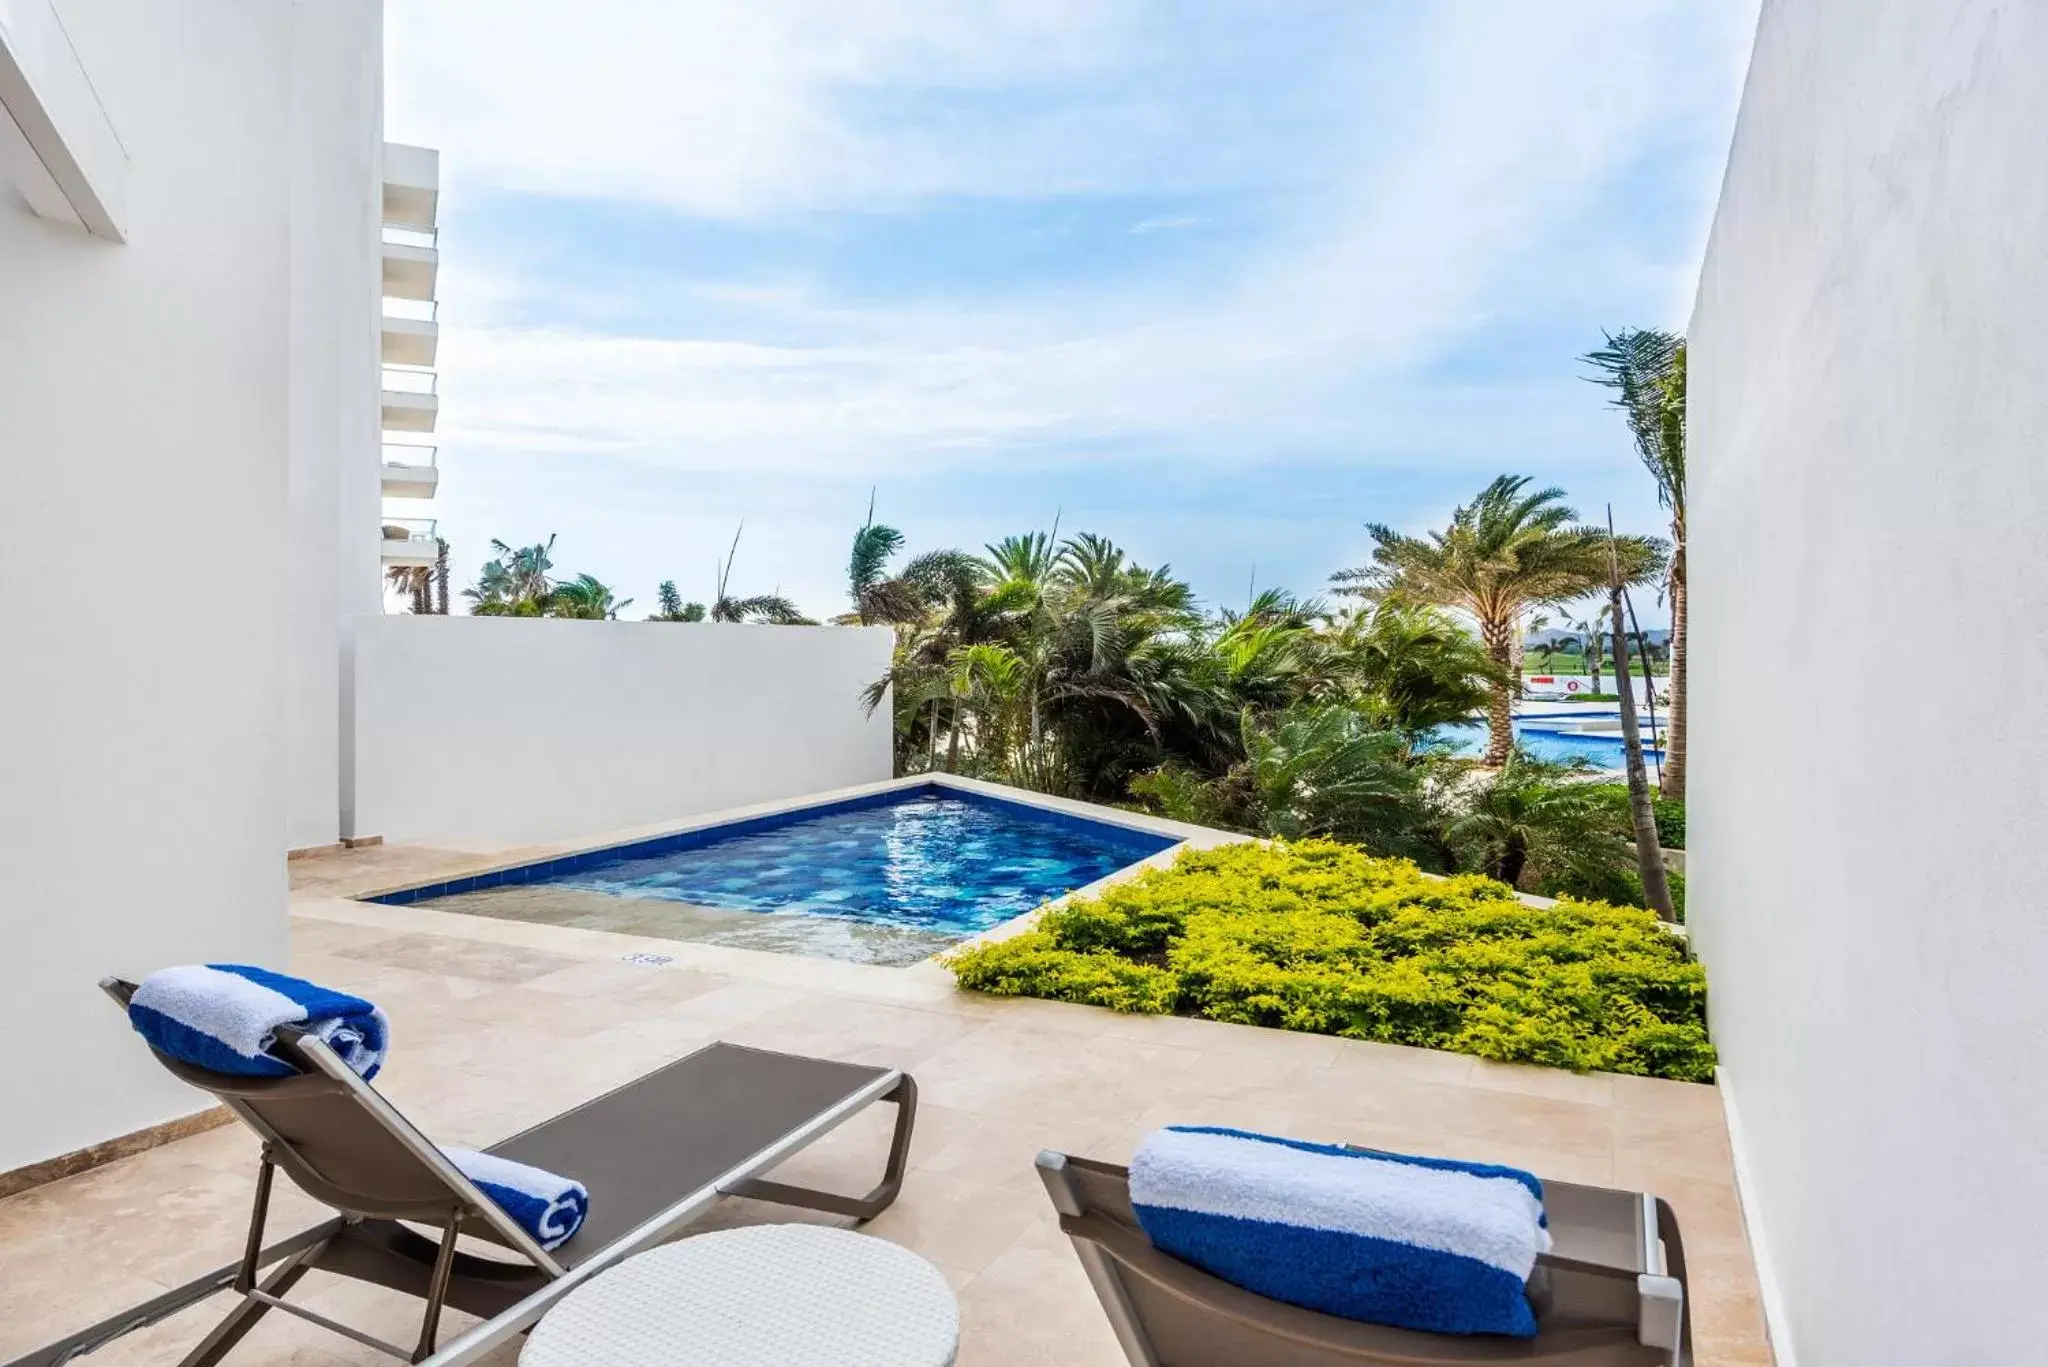 Swimming Pool in Dreams Karibana Cartagena Golf & Spa Resort